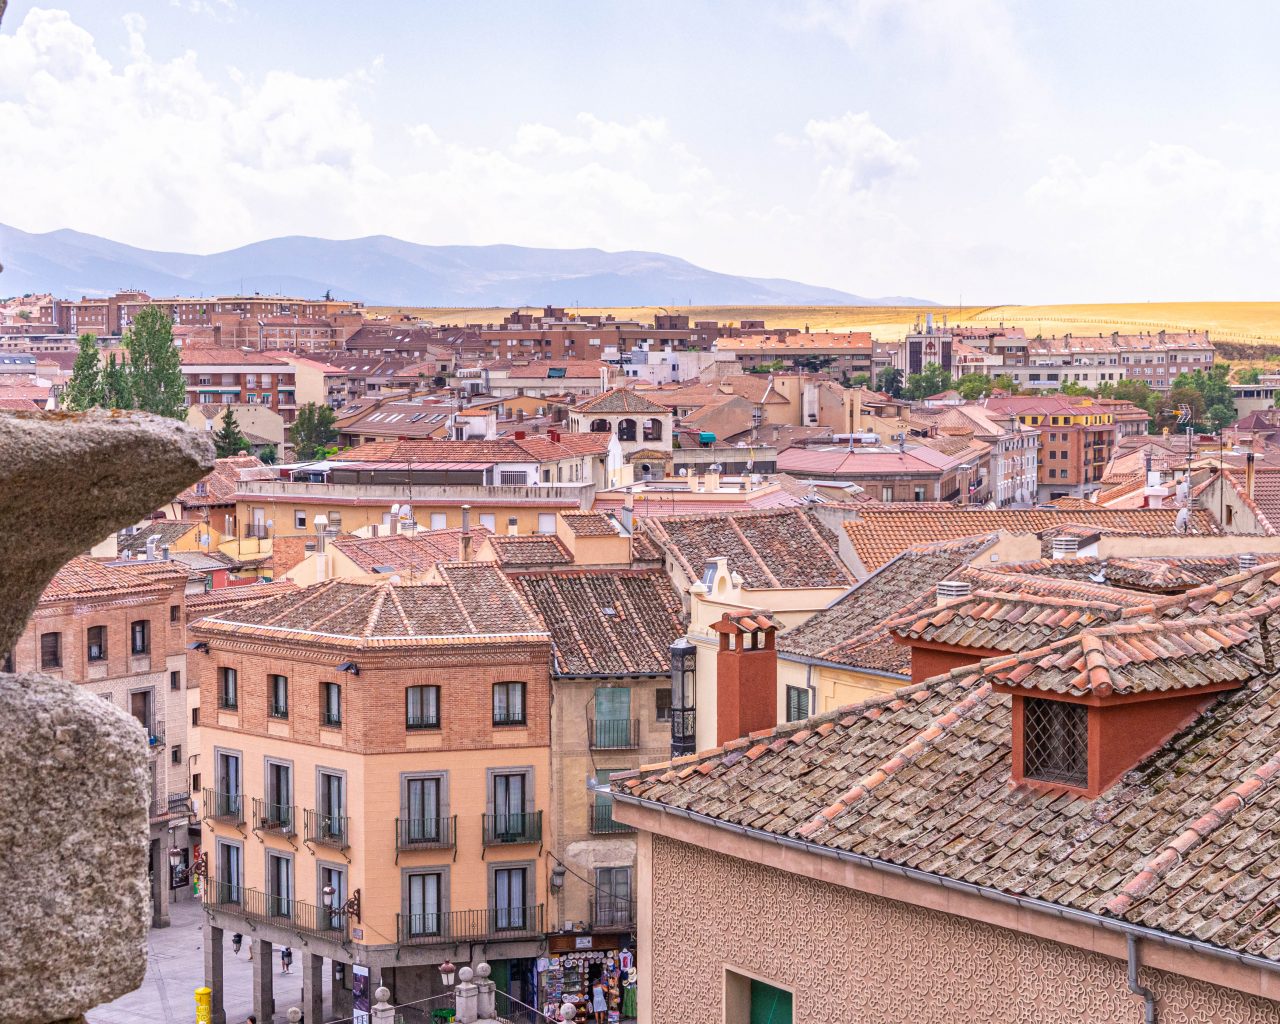 Overzicht-binnenstad-Segovia-Spanje